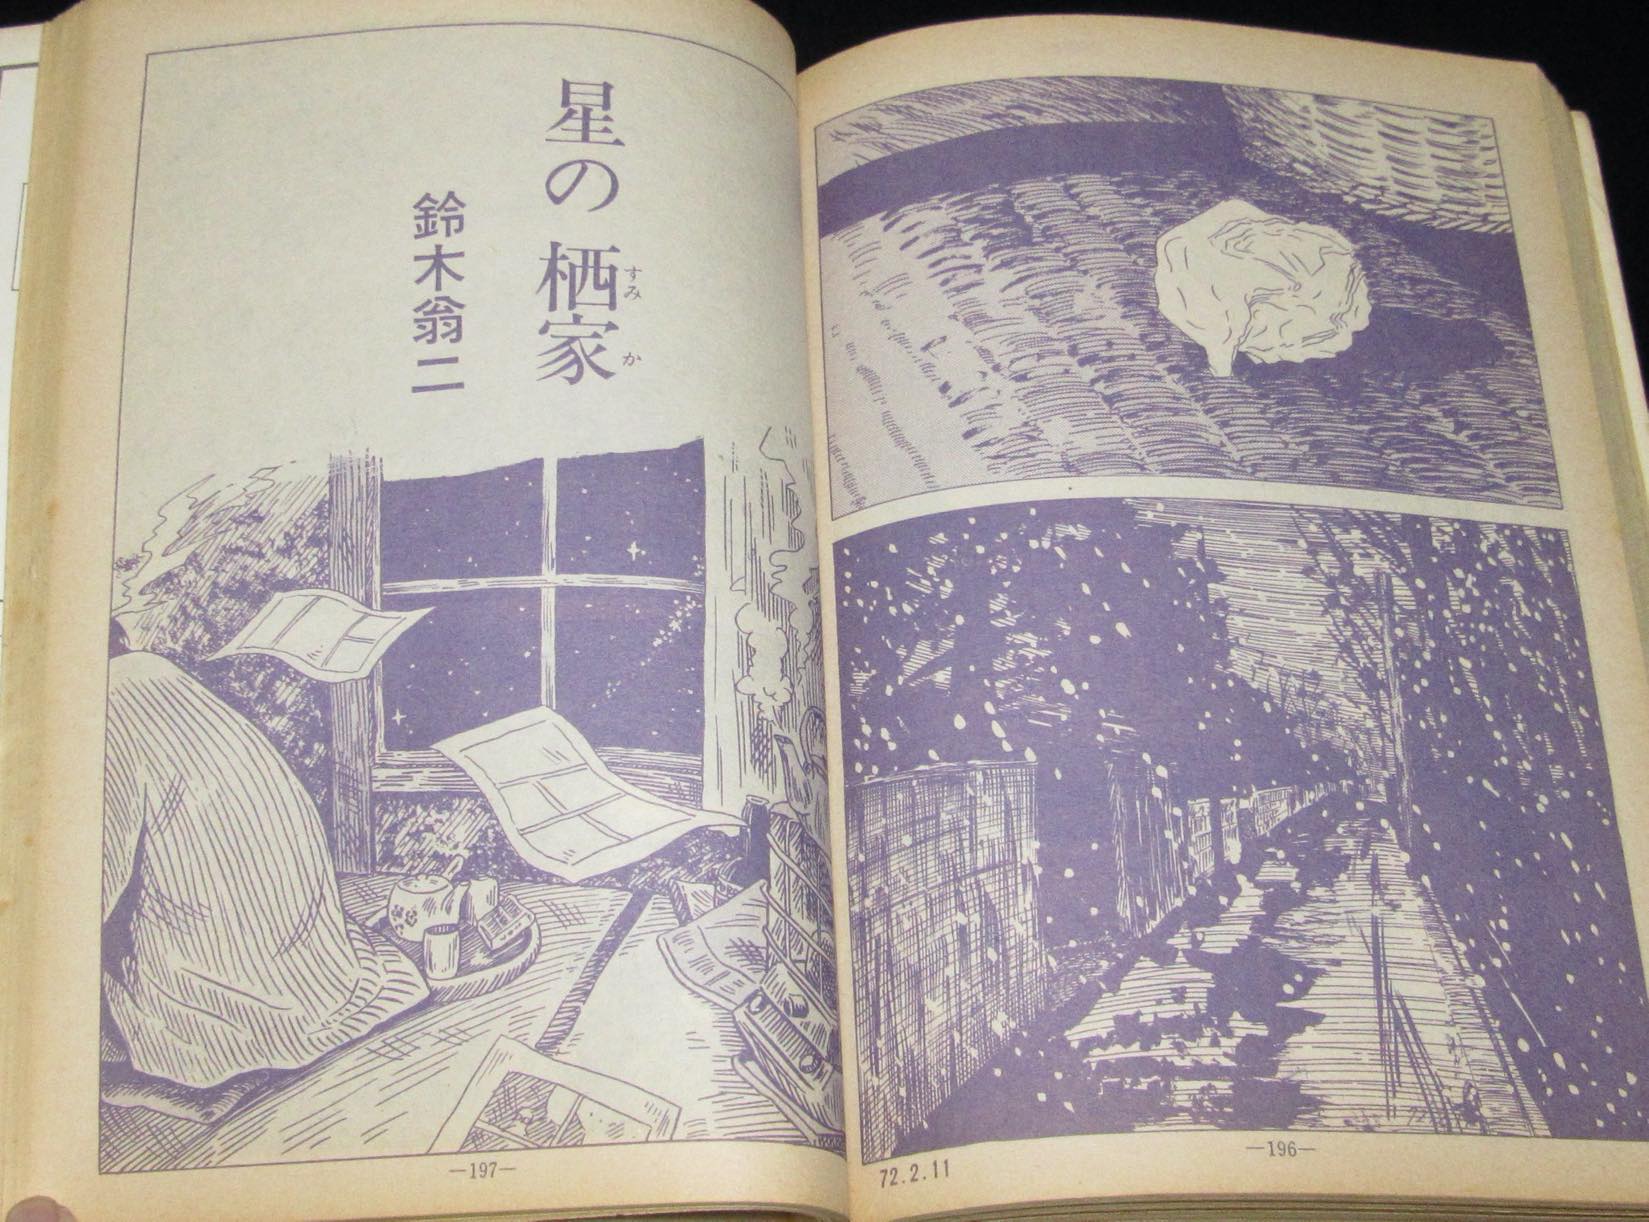 月刊漫画ガロ 1972年6月号　池上遼一/水木しげる/花輪和一/鈴木翁二